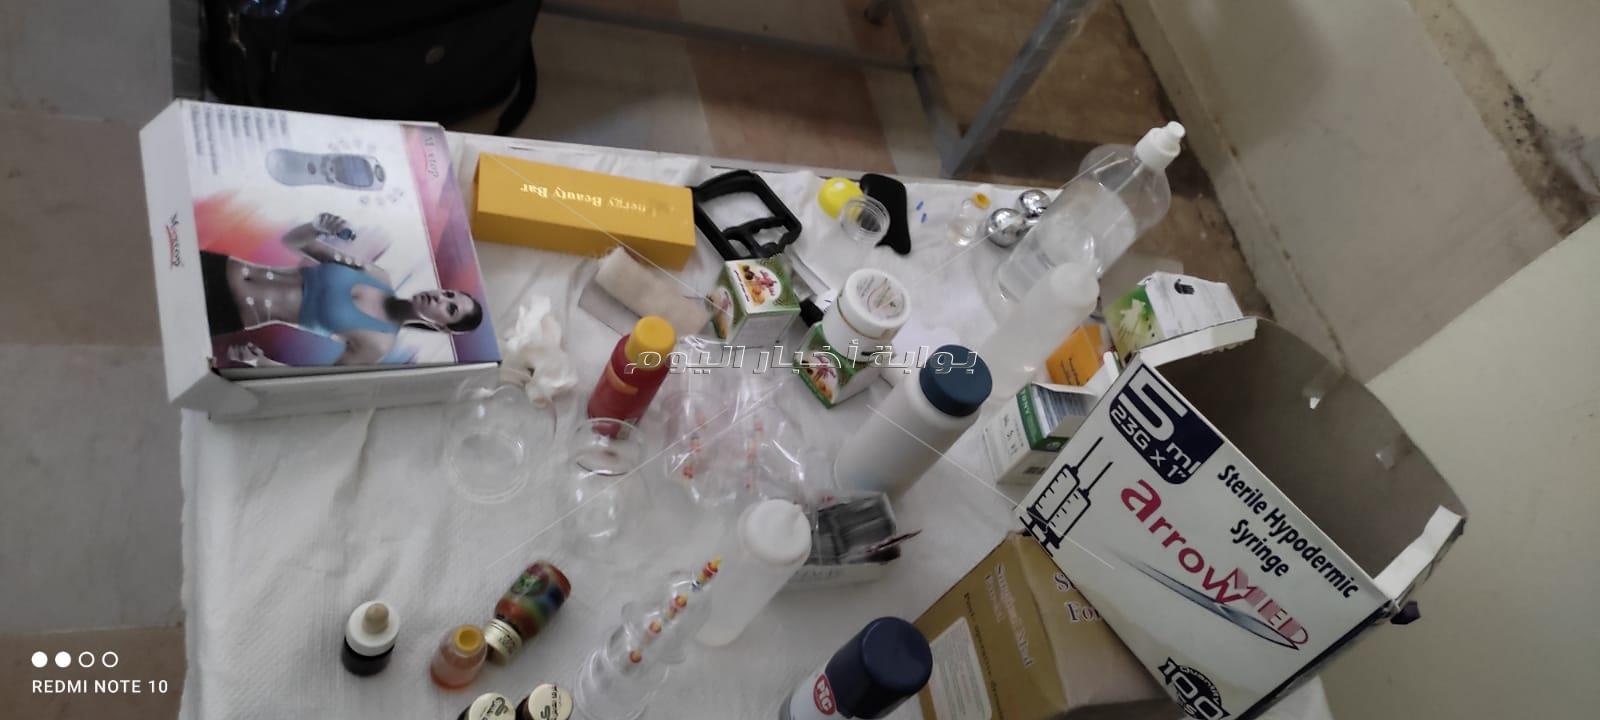 غلق وتشميع مركز مشهور للعلاج بالحجامة بدون ترخيص بداخلة أدوية مجهولة بمدينة نصر 